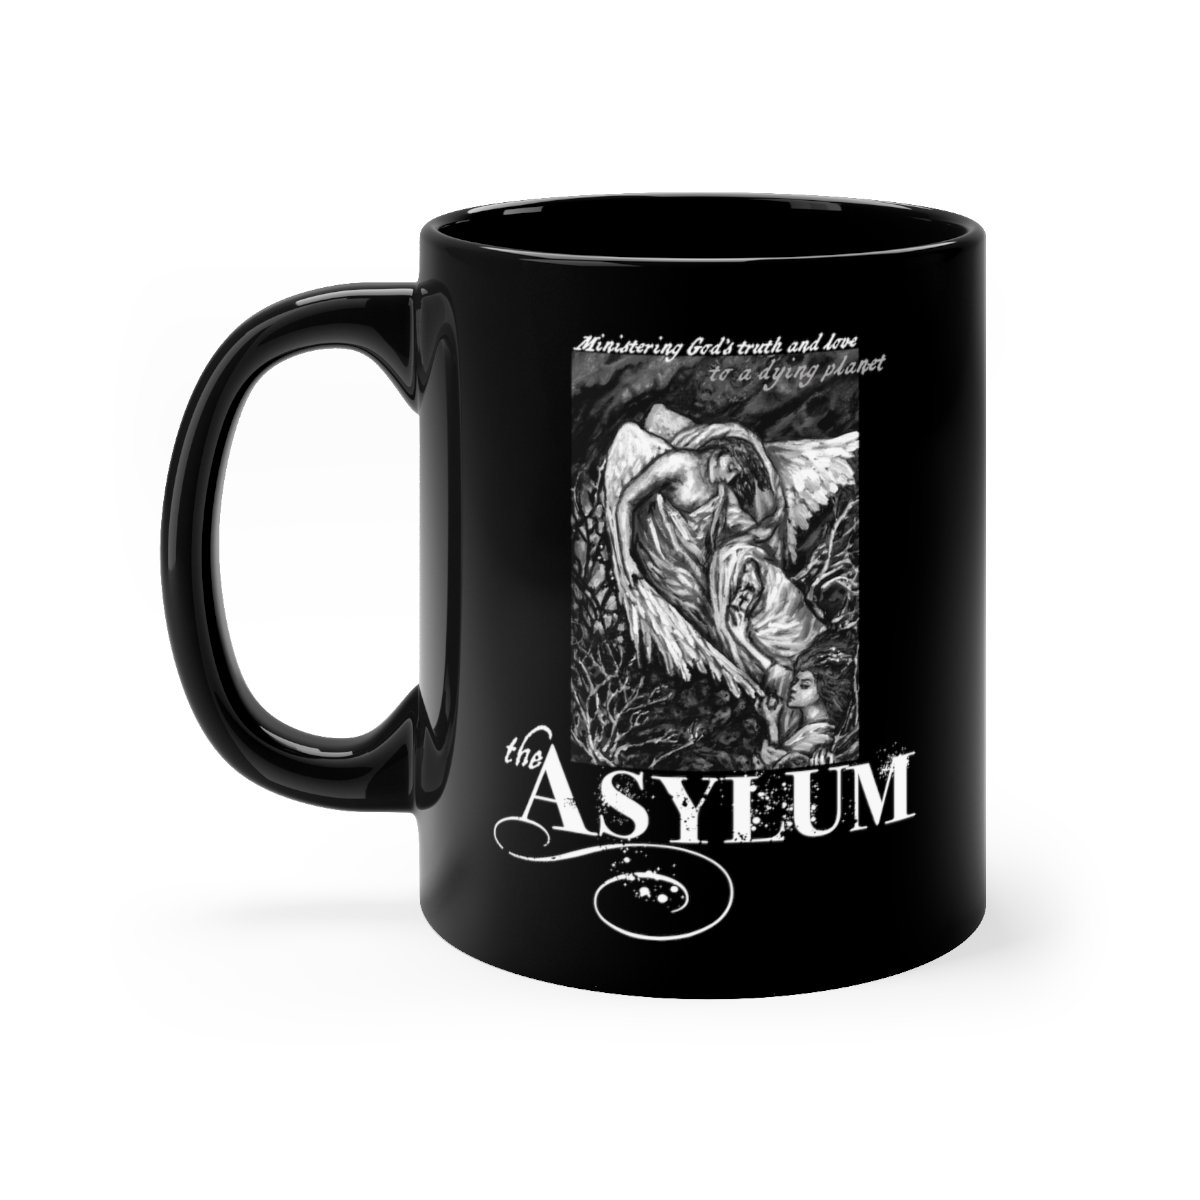 The Asylum Dying World Black mug 11oz